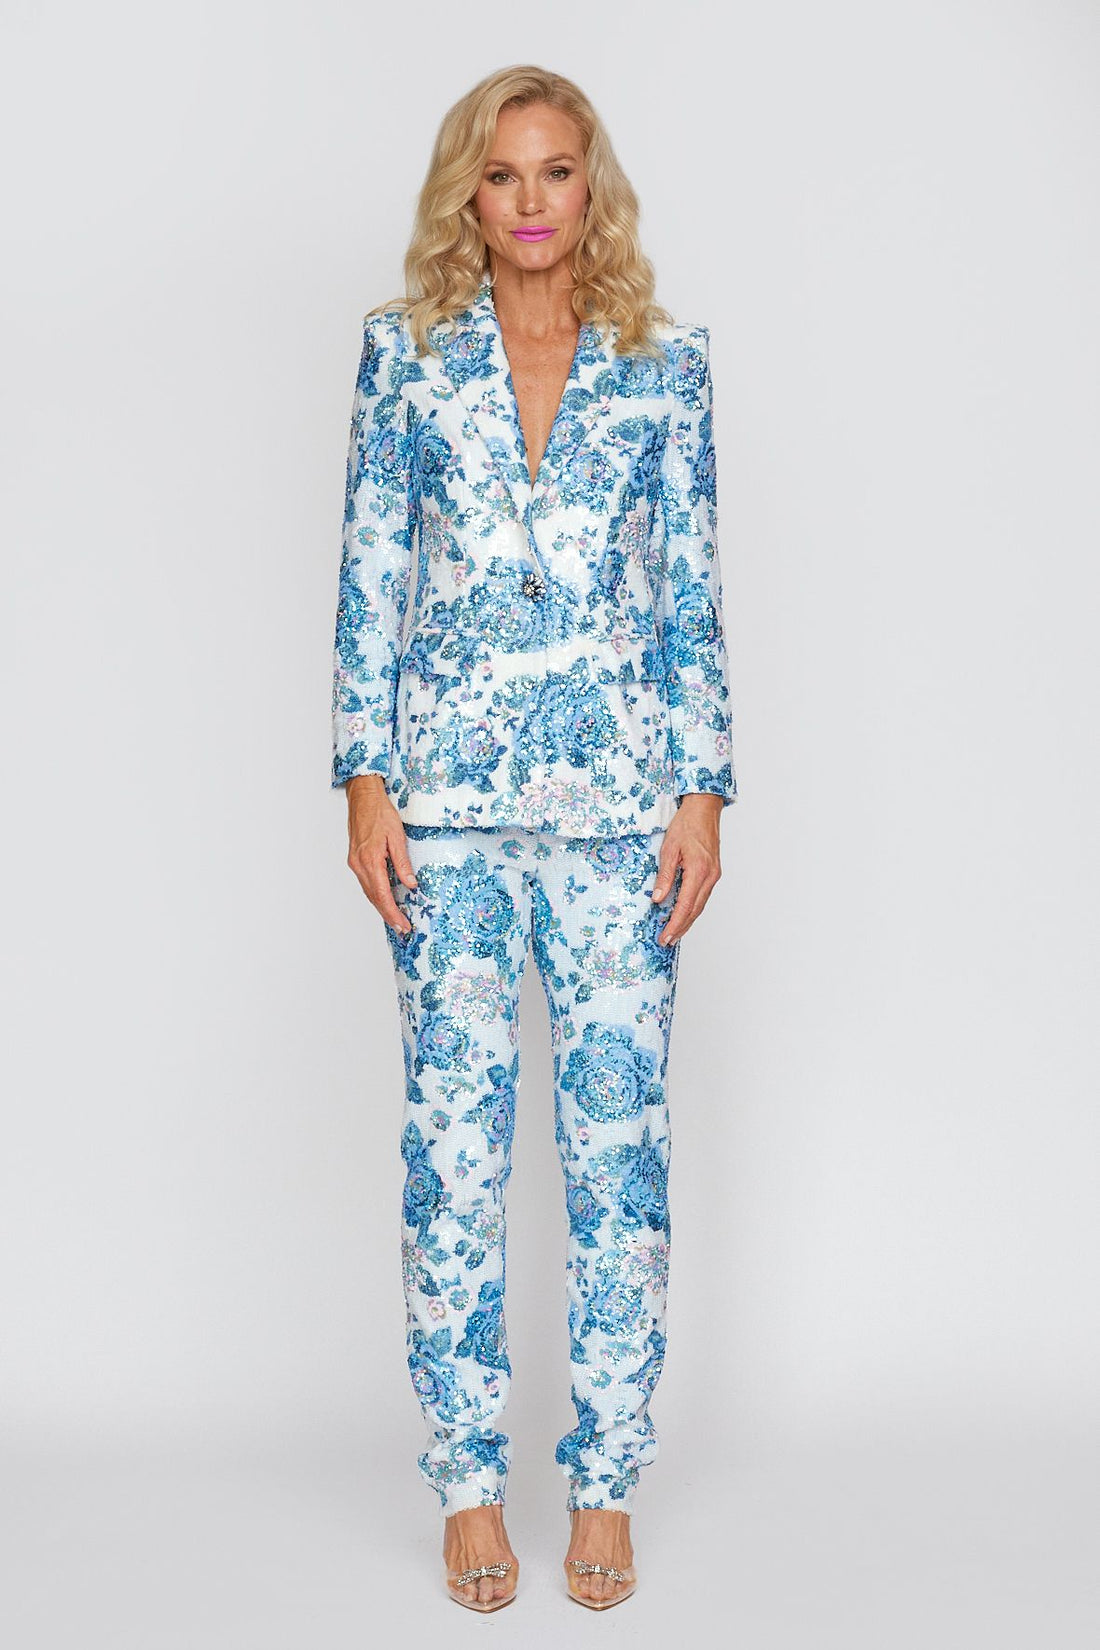 Aqua Floral Sequin Suit